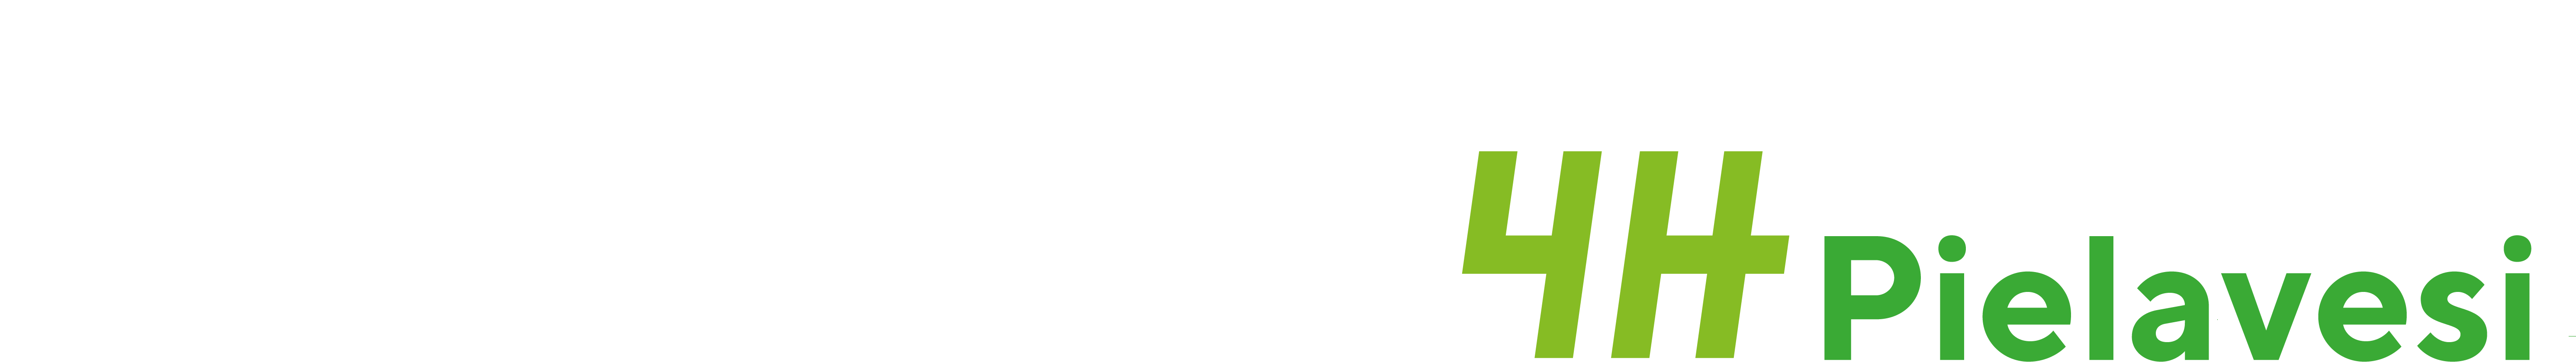 Jrjestn Pielaveden 4H-yhdistys ry logo